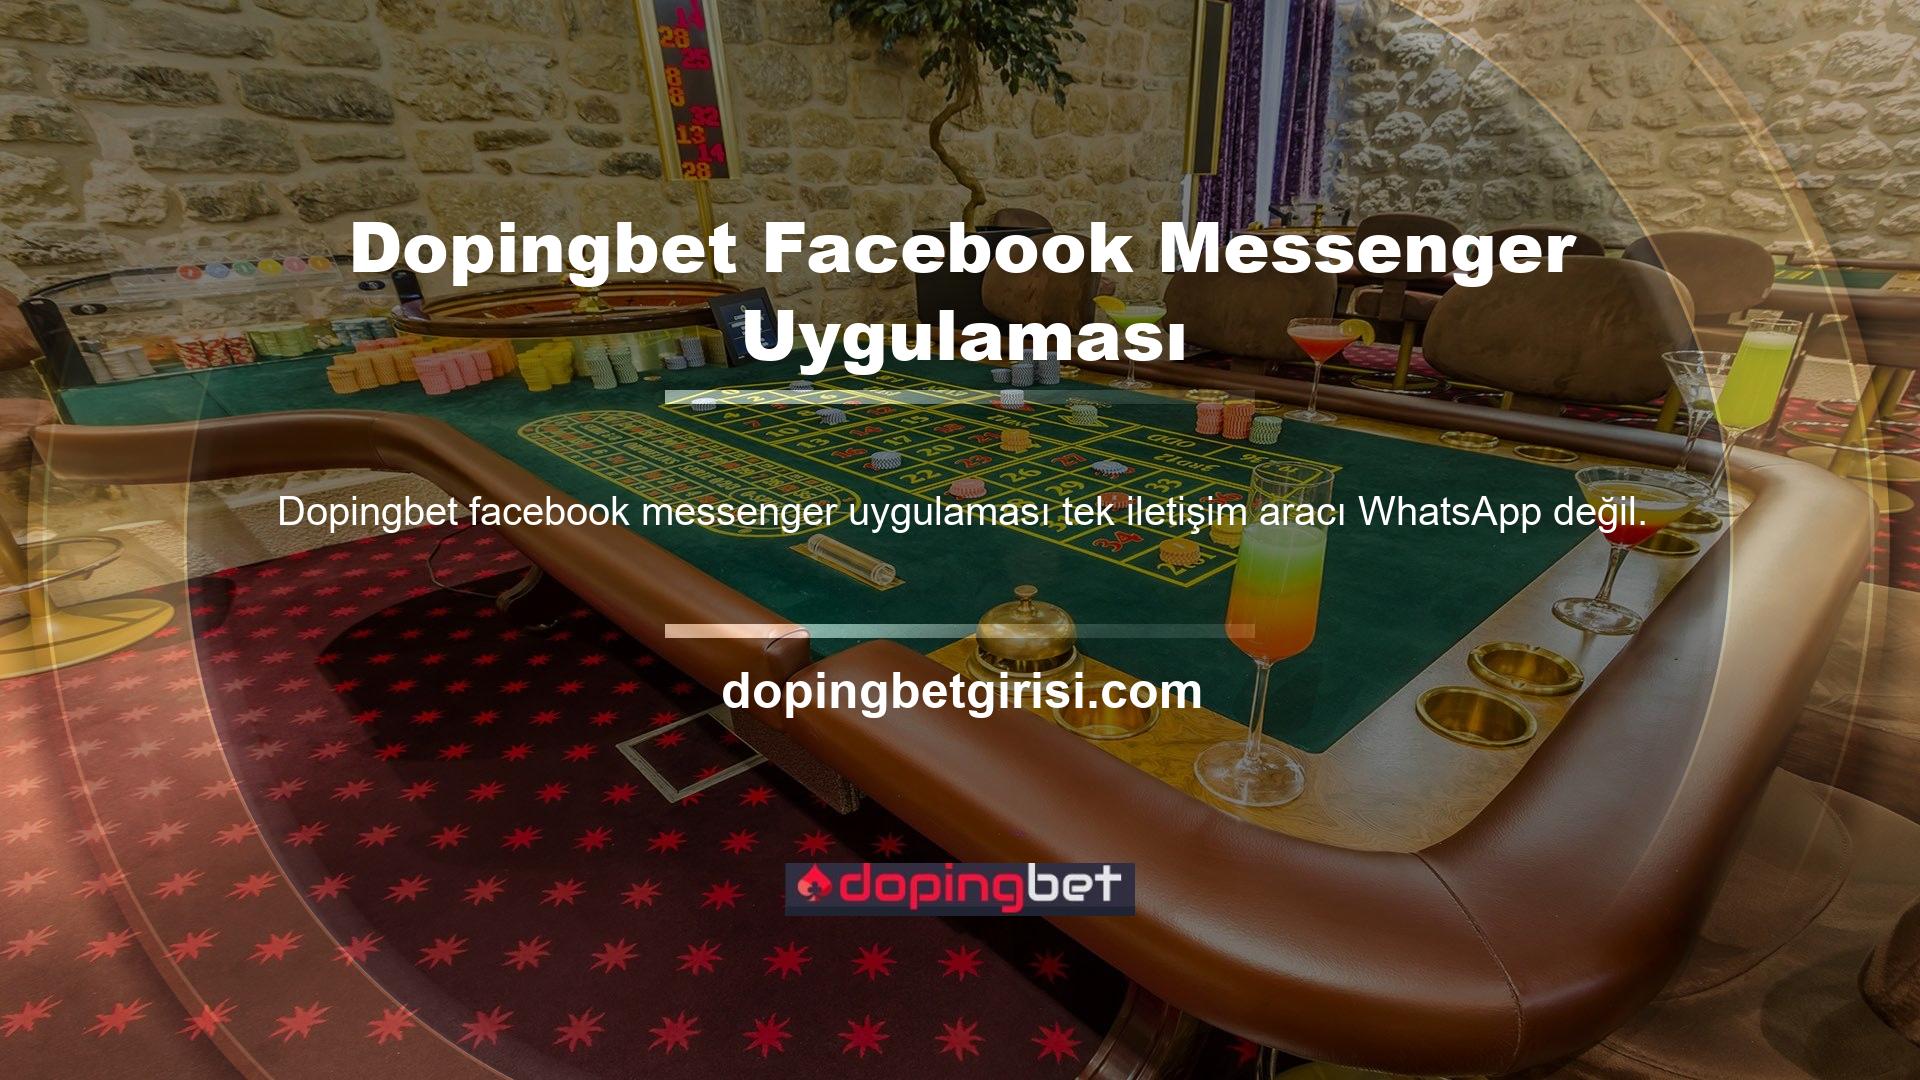 Dopingbet Facebook Messenger uygulaması da çok iyi biliniyor